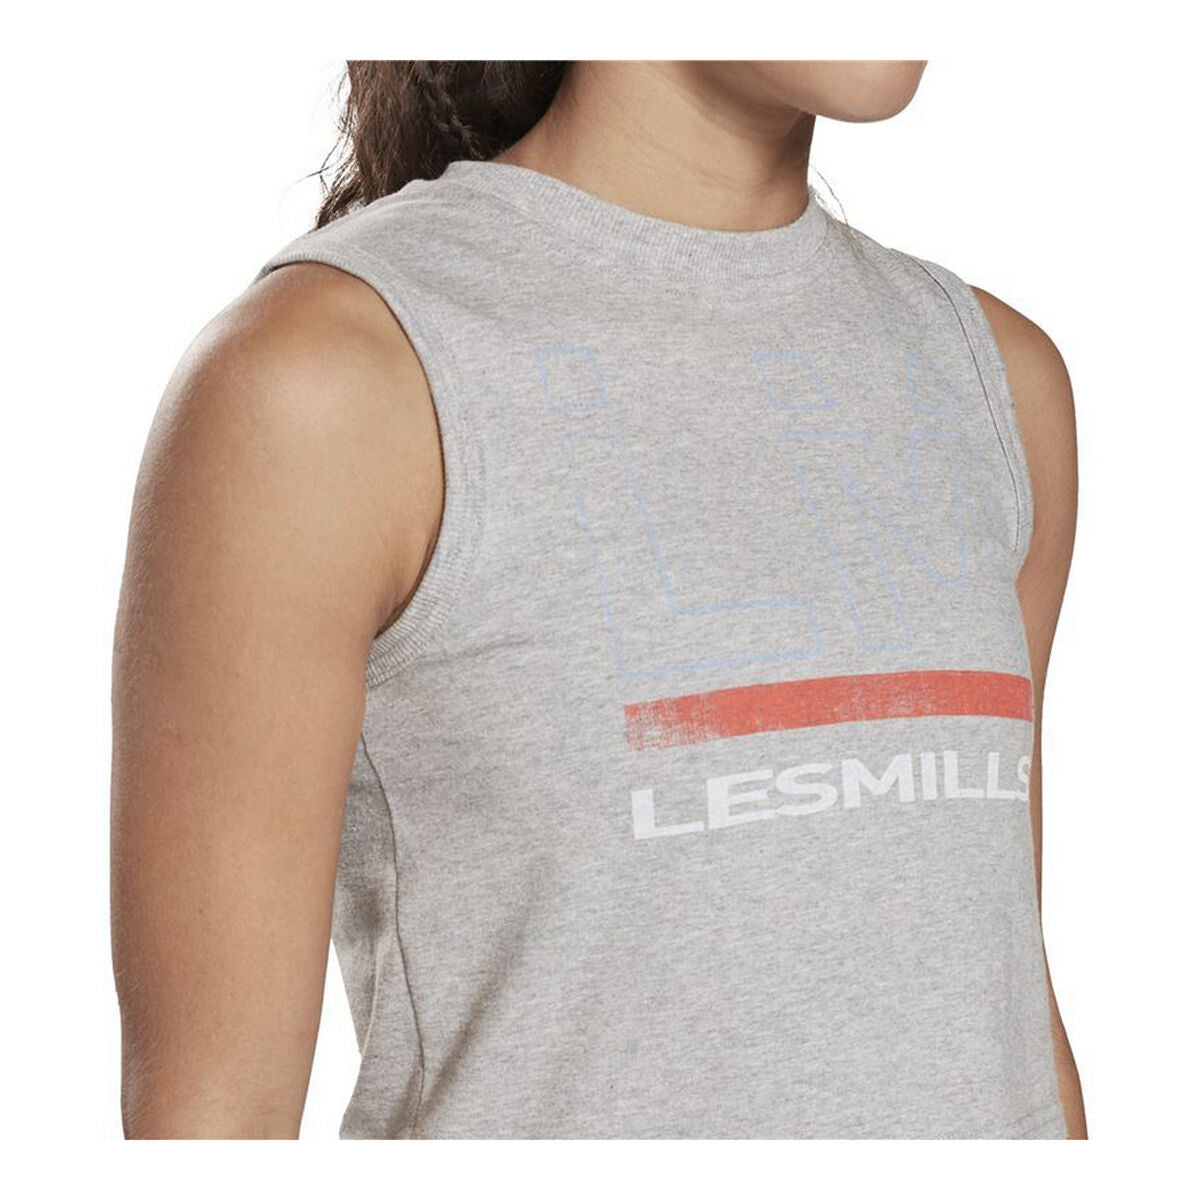 Camiseta de Tirantes Reebok Les Mills® Graphic Gris claro